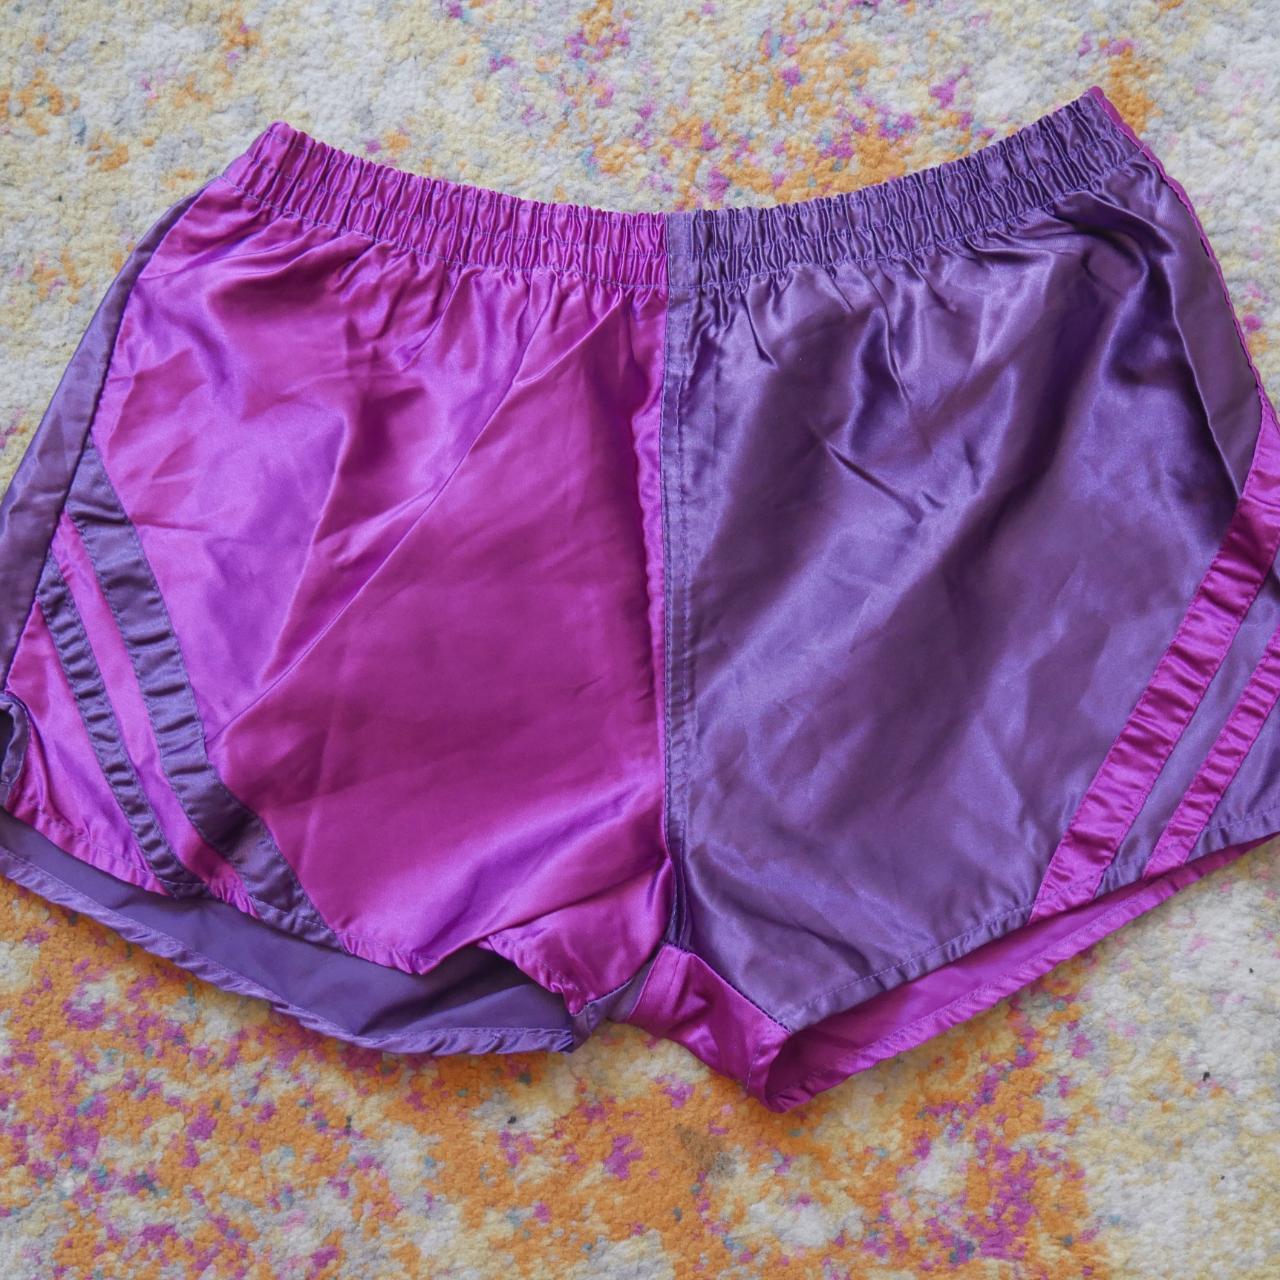 Vintage Satin Gym Shorts Size US 6/L - Approx. uk... - Depop